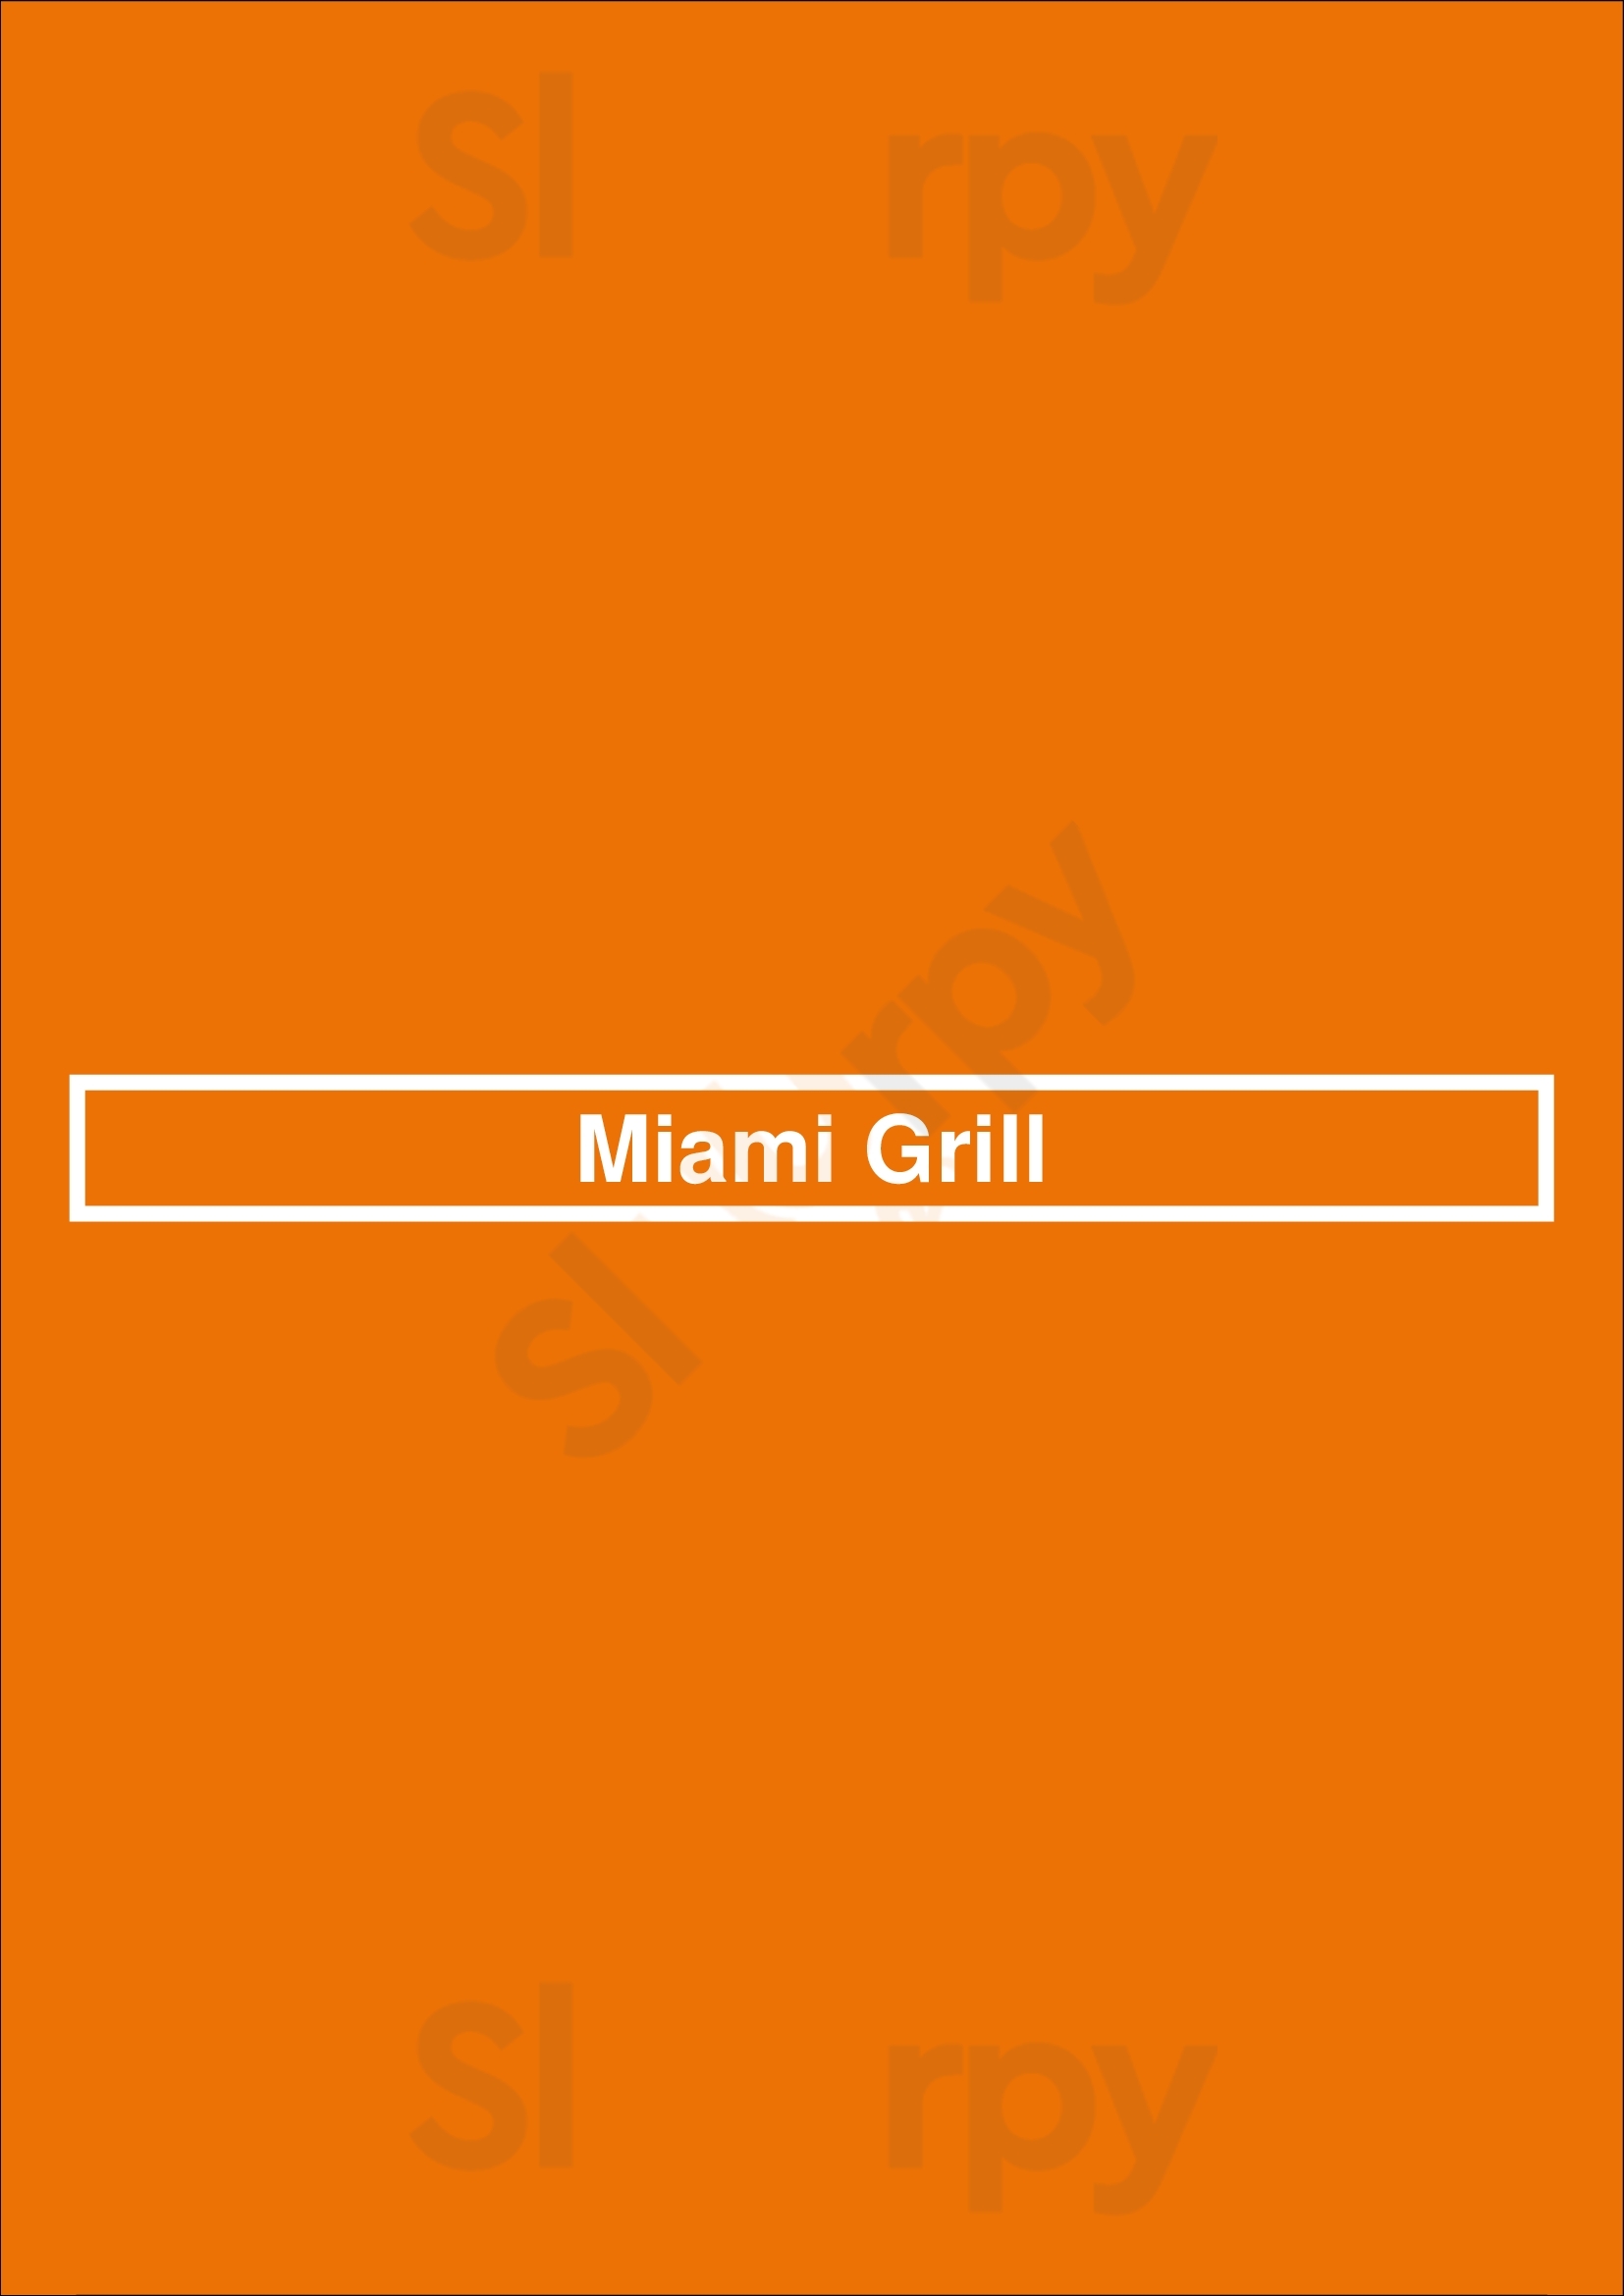 Miami Grill Pompano Beach Menu - 1